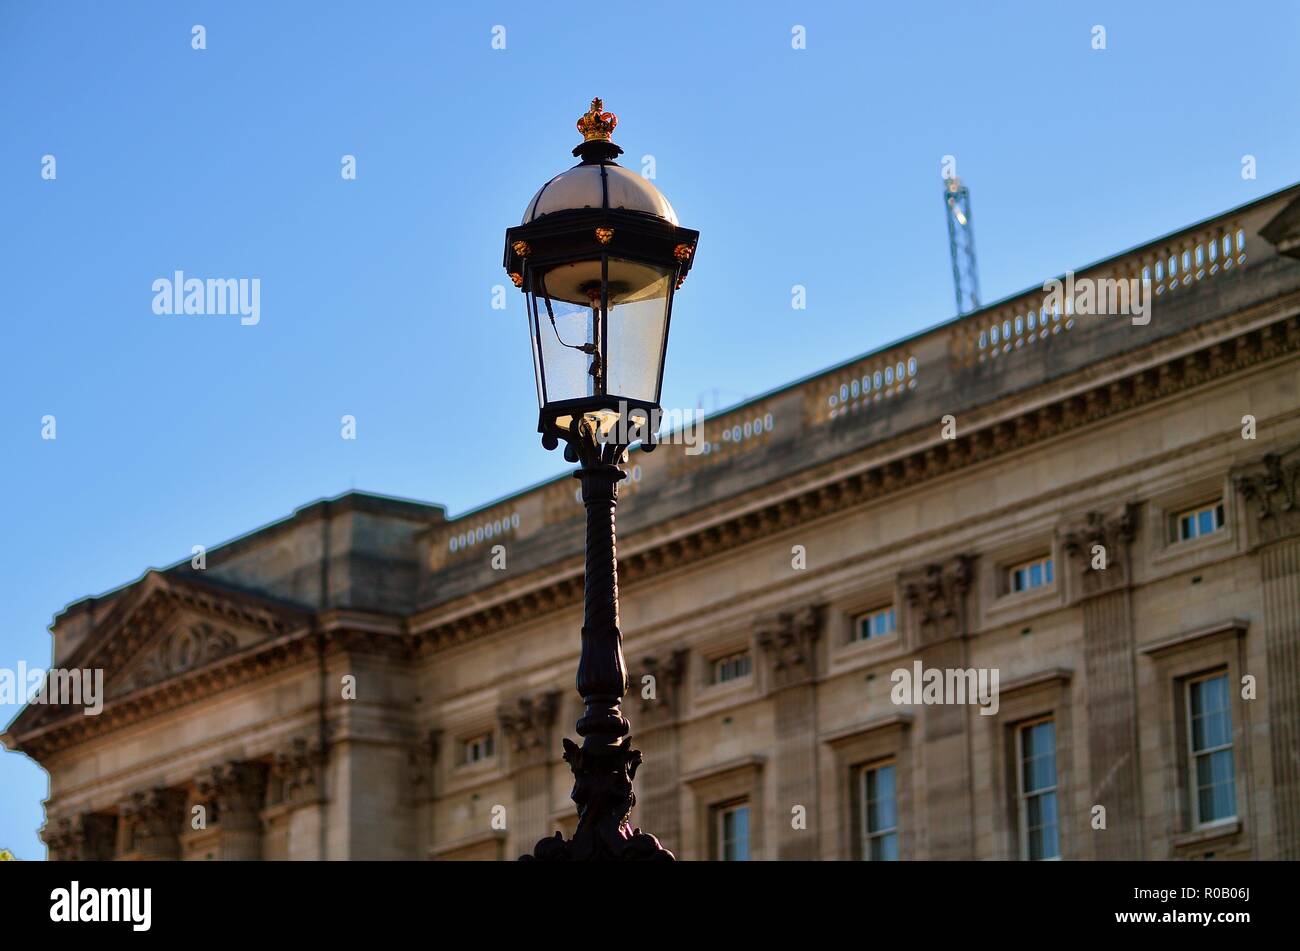 Londra, Inghilterra, Regno Unito. Un tempo onorato coach luce di fronte a Buckingham Palace, la famosa residenza della regina d'Inghilterra. Foto Stock